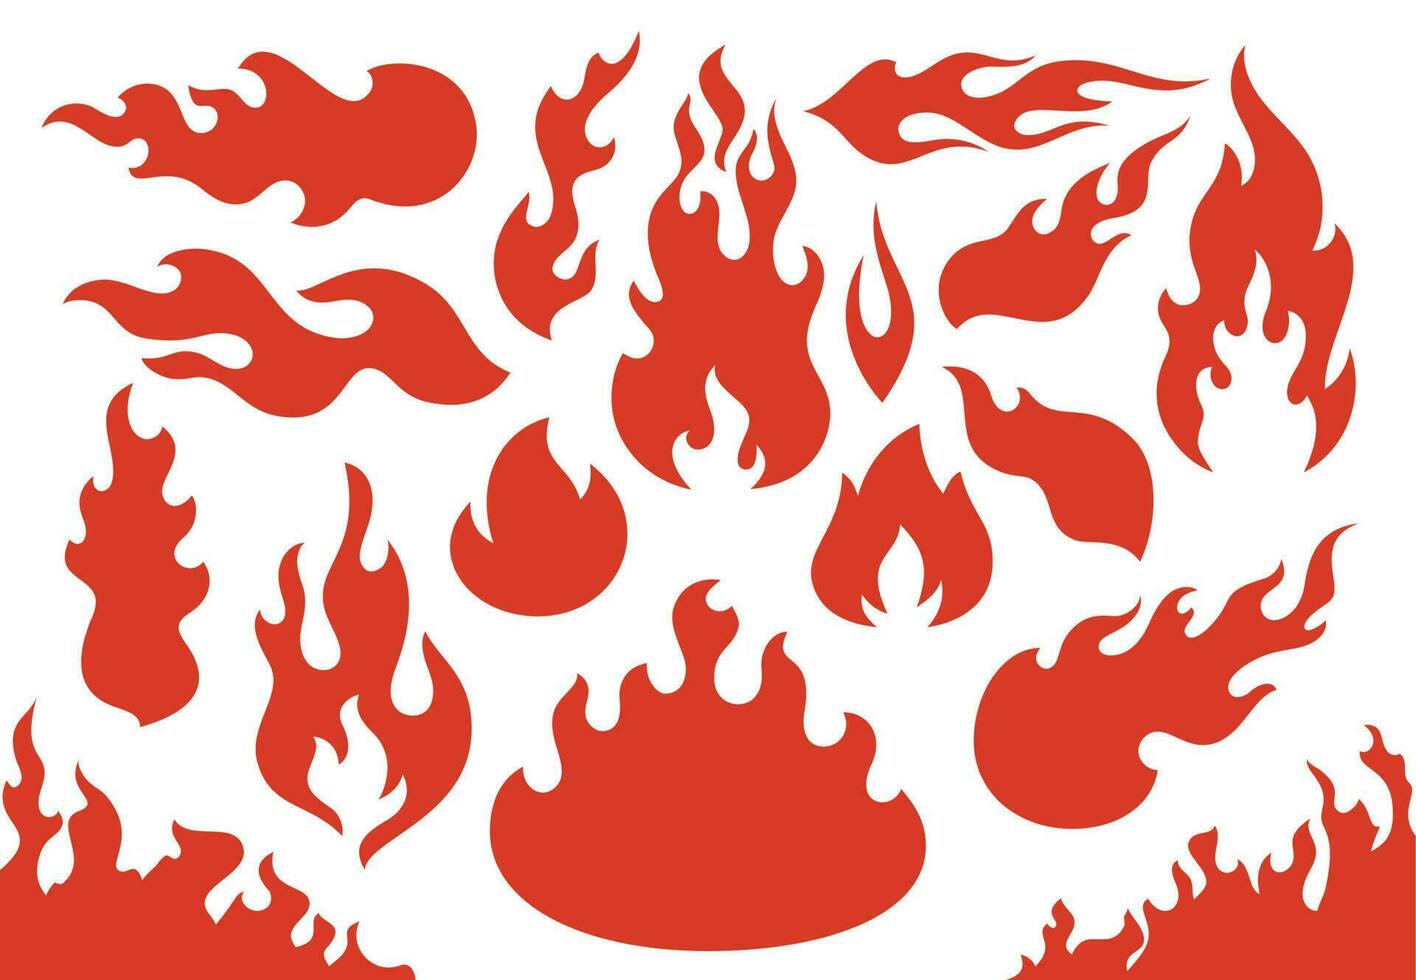 laaiend brand vlammen. vlammend rood wildvuur vurig of racing vlam. laaiend hel inferno brand pictogrammen illustratie reeks vector